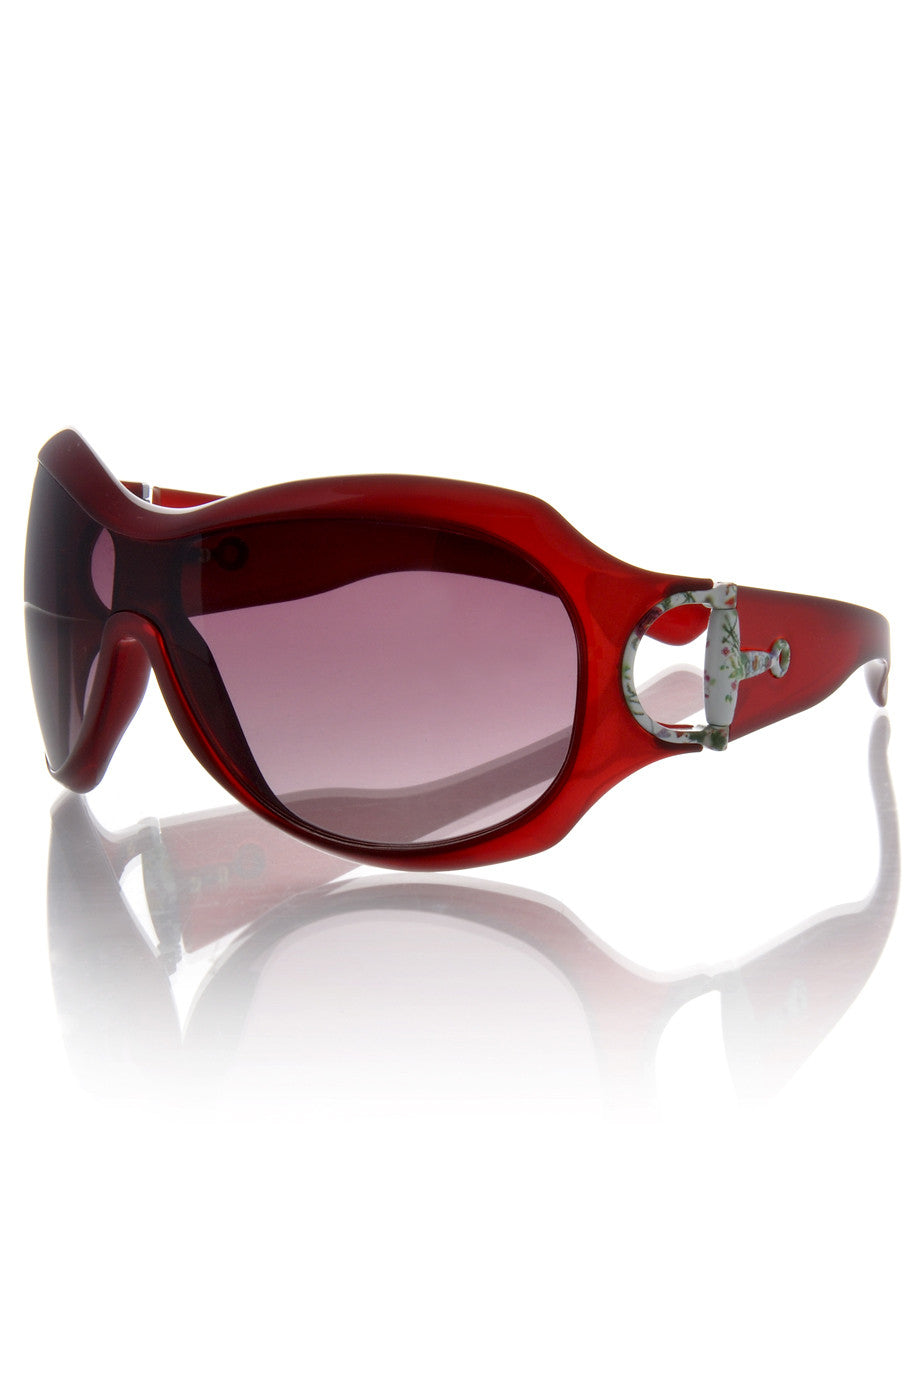 GUCCI 2900 RED Sunglasses –